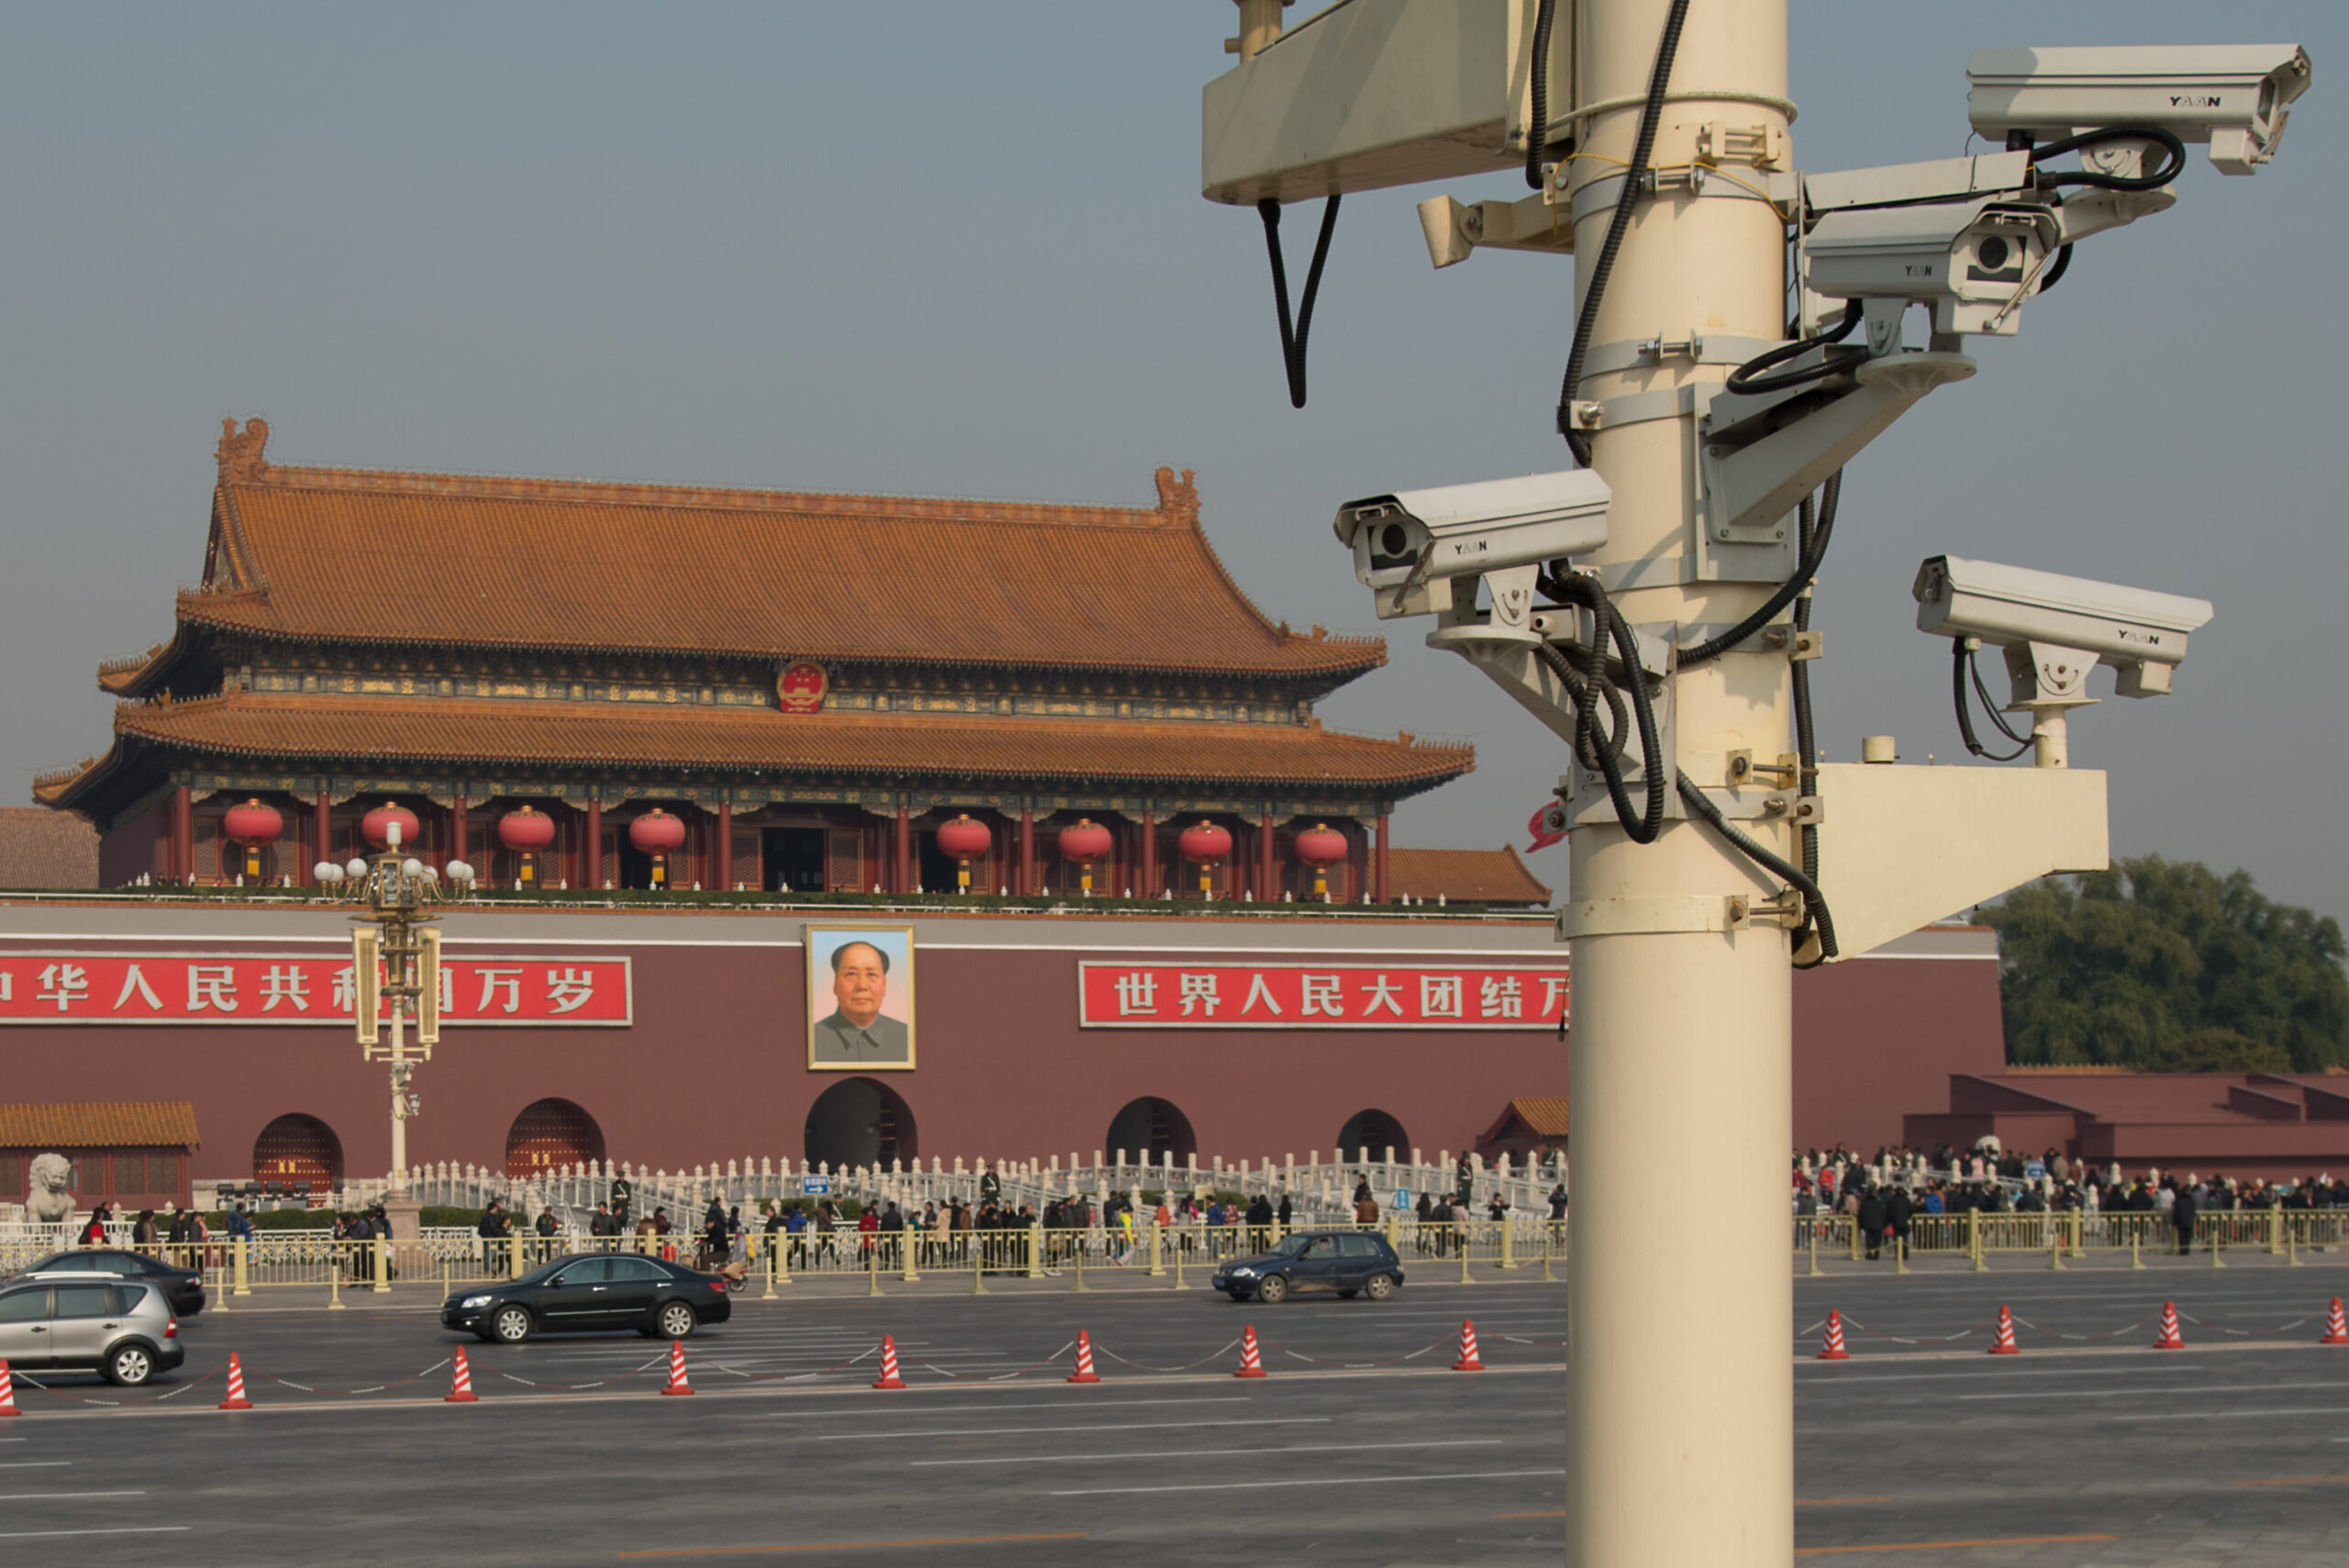 Камери за наблюдение, гледащи към площад Тянанмън в Пекин, Китай. Има далечен плакат на Мао Цзедун.